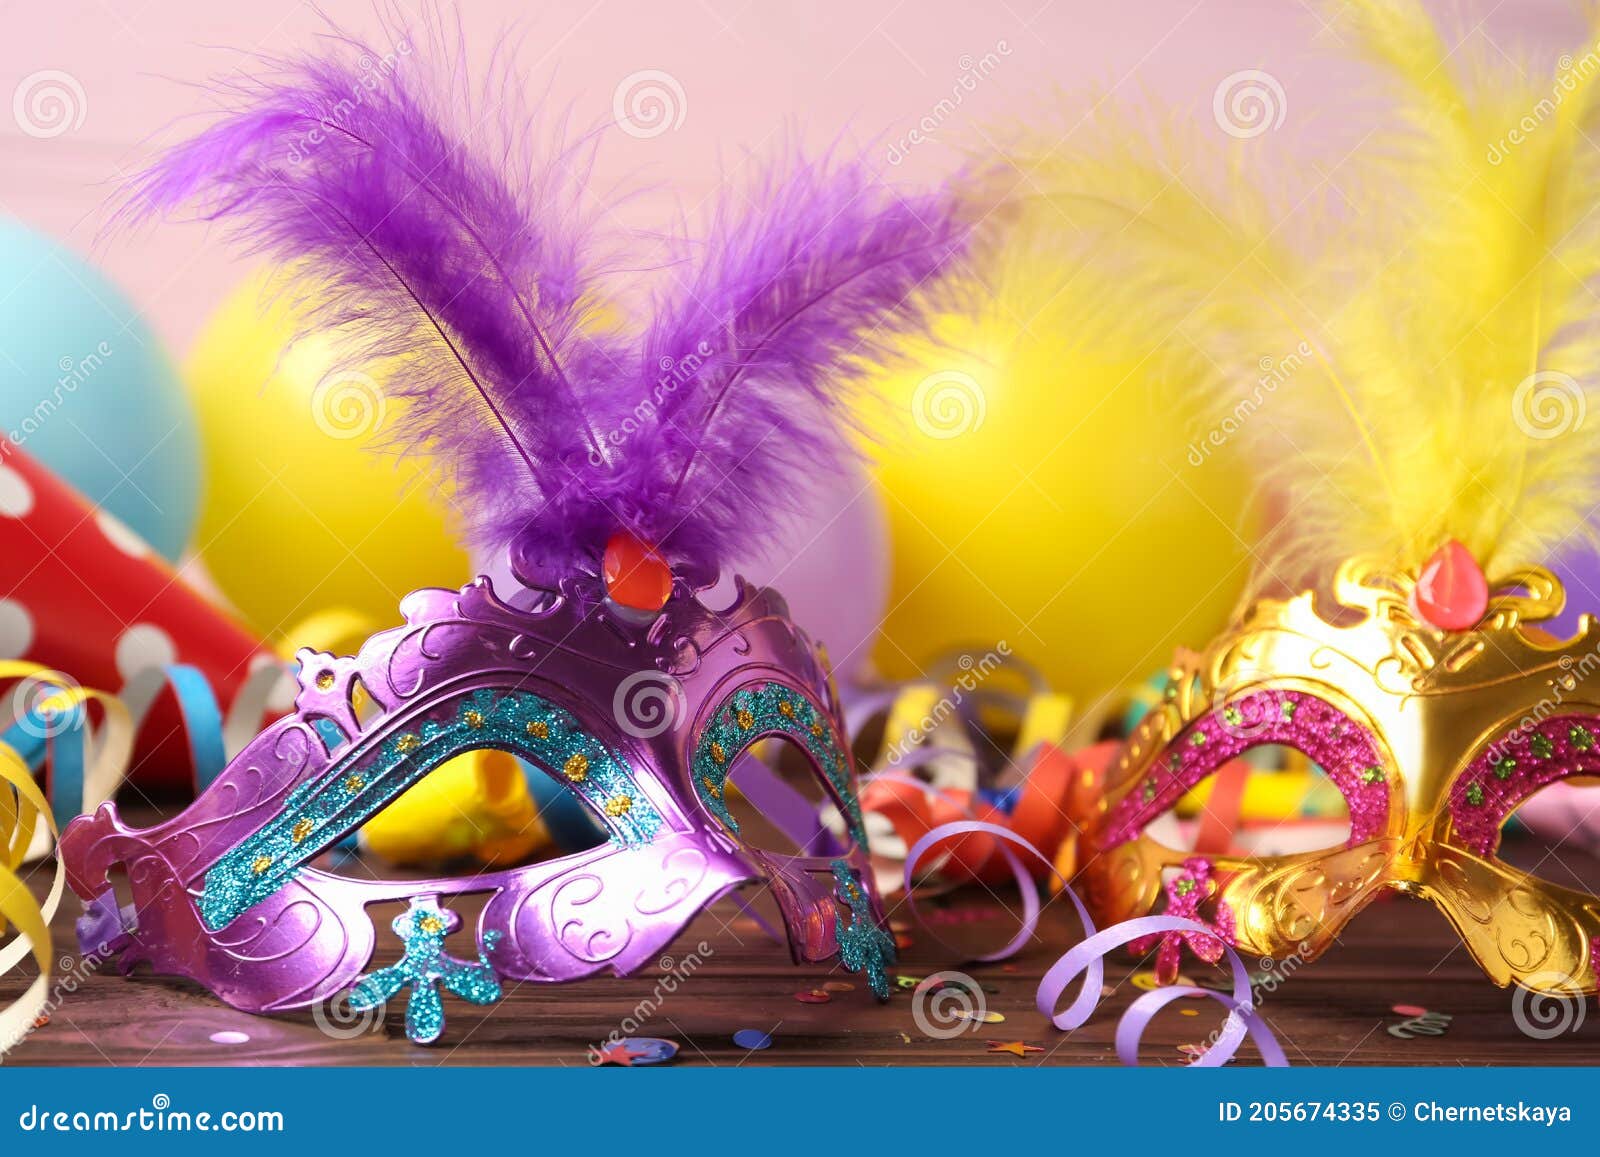 Bellas Máscaras De Carnaval Y Decoración De Fiesta En Un Armario De Madera  Imagen de archivo - Imagen de cara, arte: 205674335